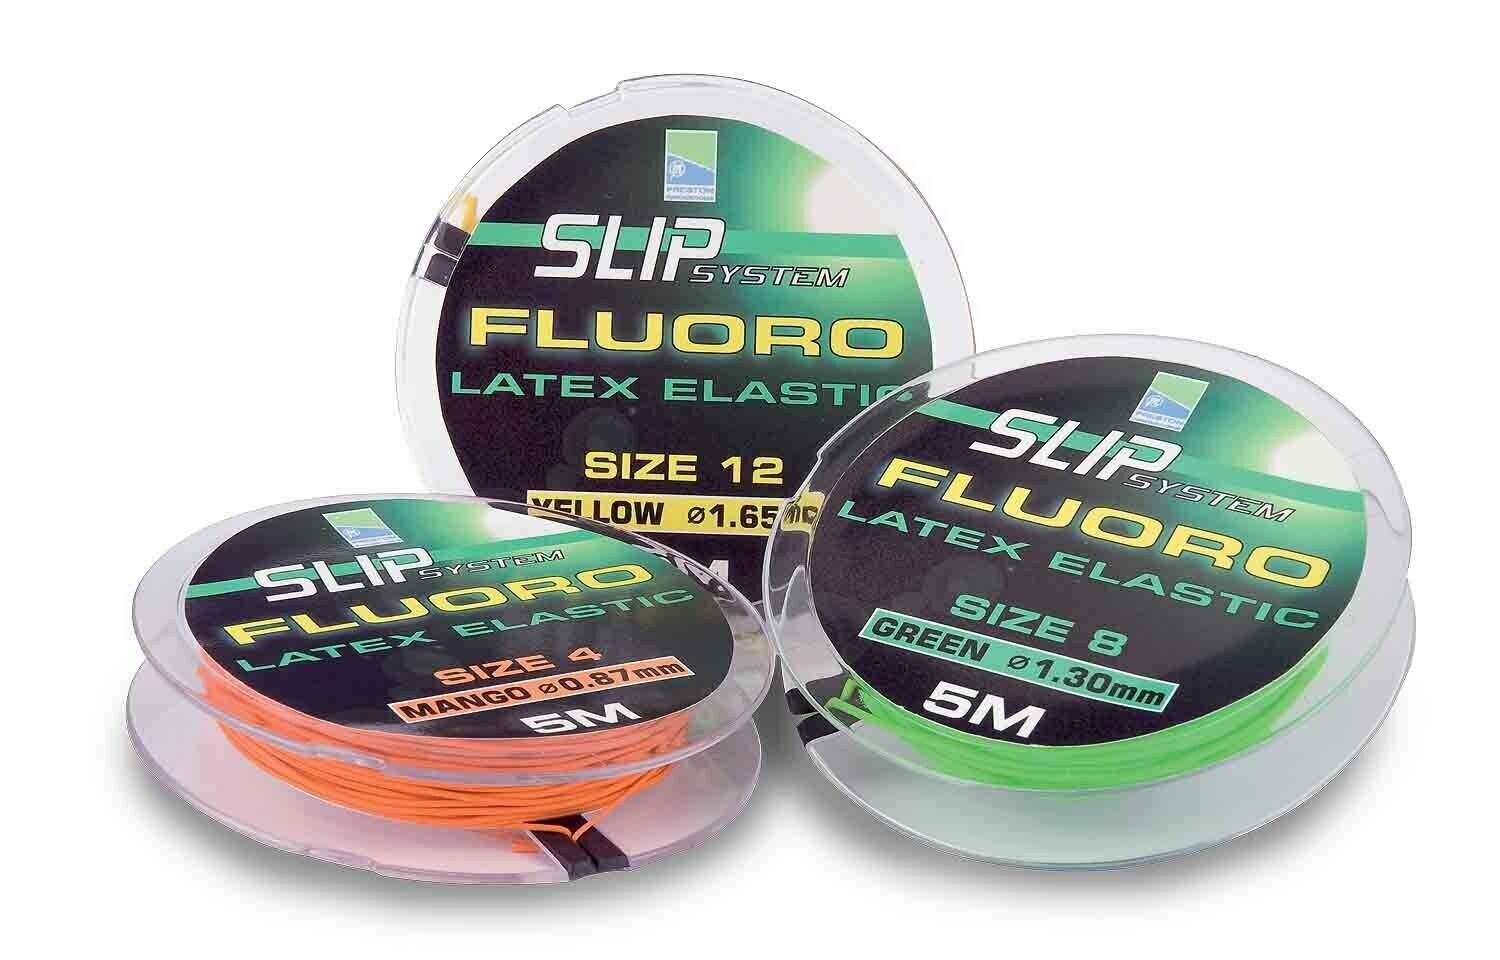 Preston Innovations Fluoro Slip Elastic Sitz 4